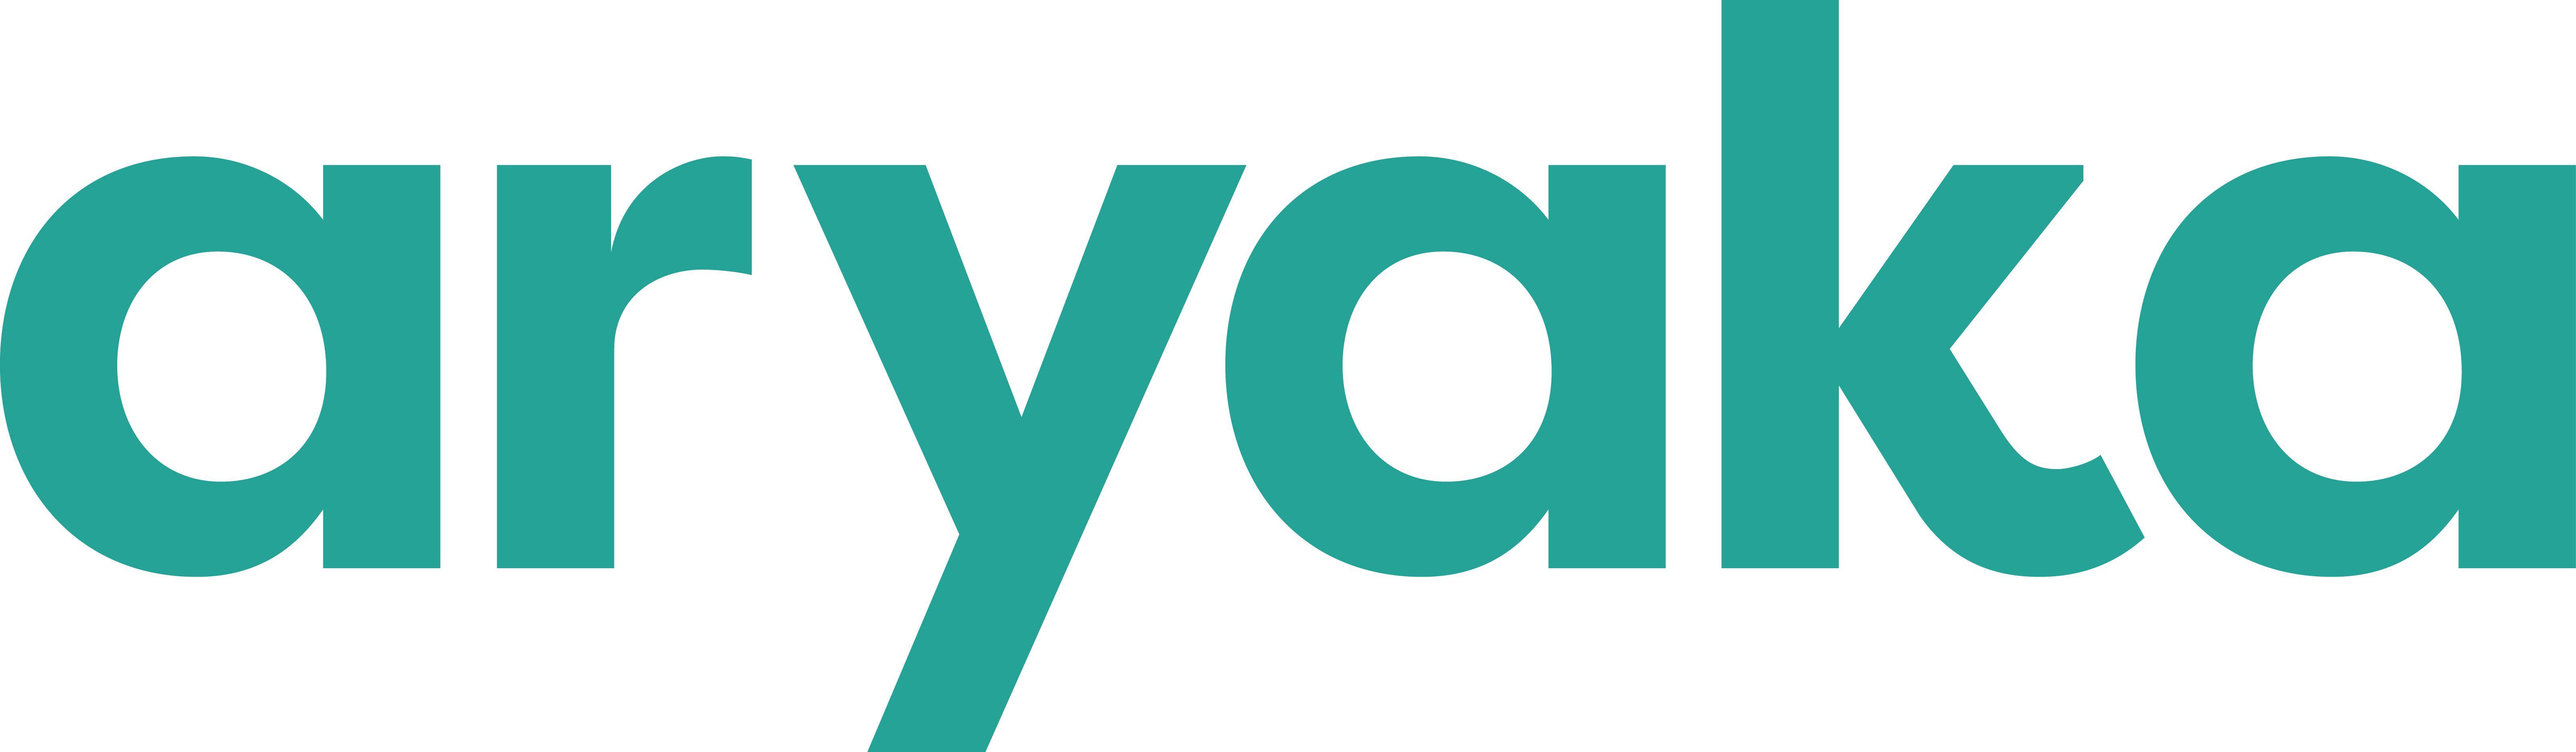 Aryaka Logo - Aryaka Logo_Teal